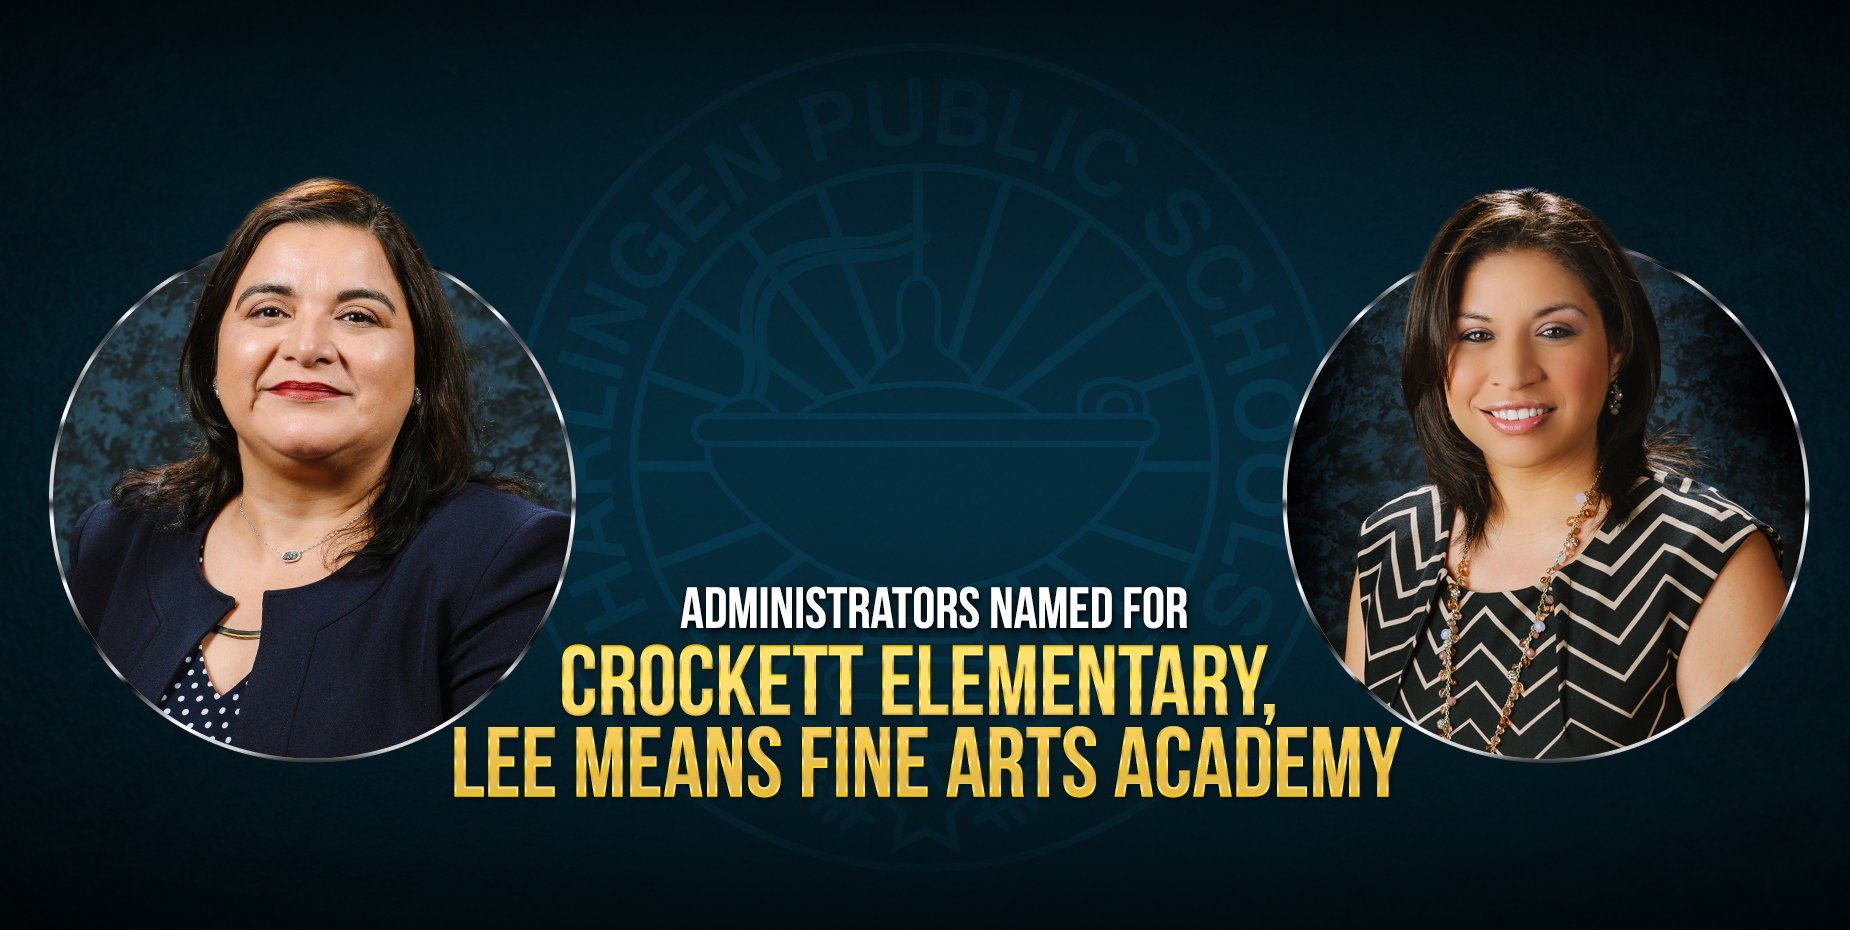 Han sido nombradas las administradoras para la Primaria Crockett y la Academia de Artes Lee Means.